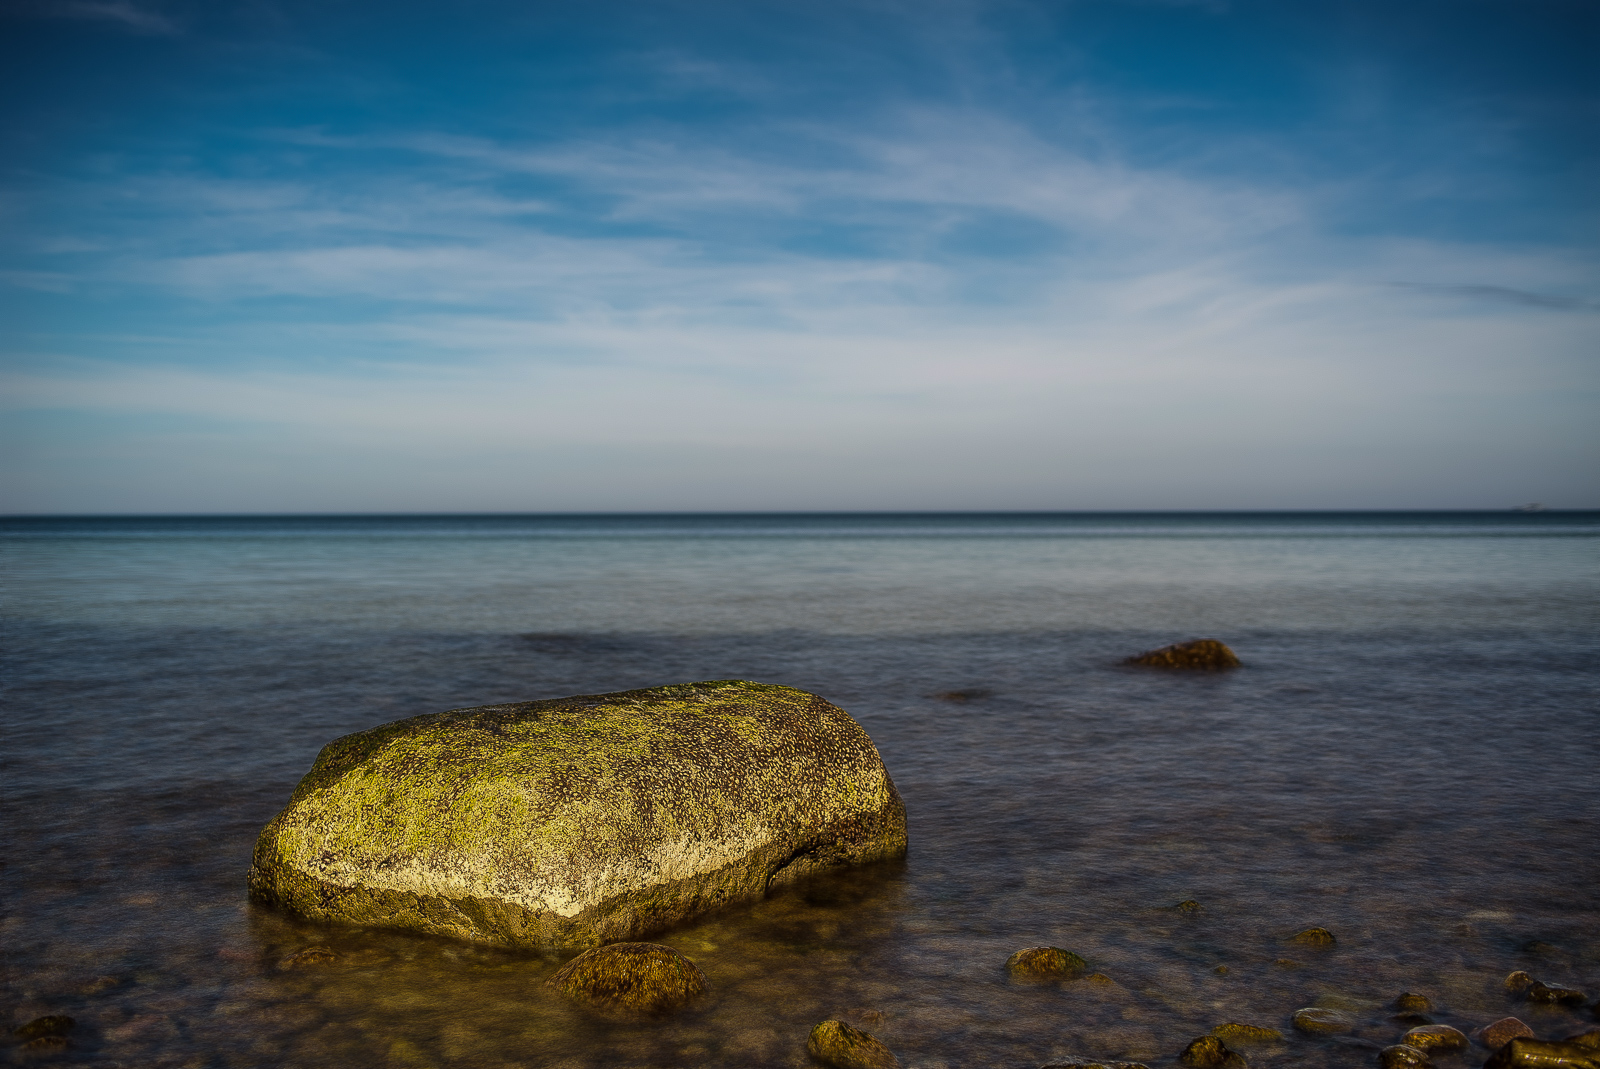 Meerlandschaft. In der Bildmitte der Horizont, vorn links ein großer (1/3 Bildbreite) von der Sonne angestrahlter Felsen nahe des Ufers